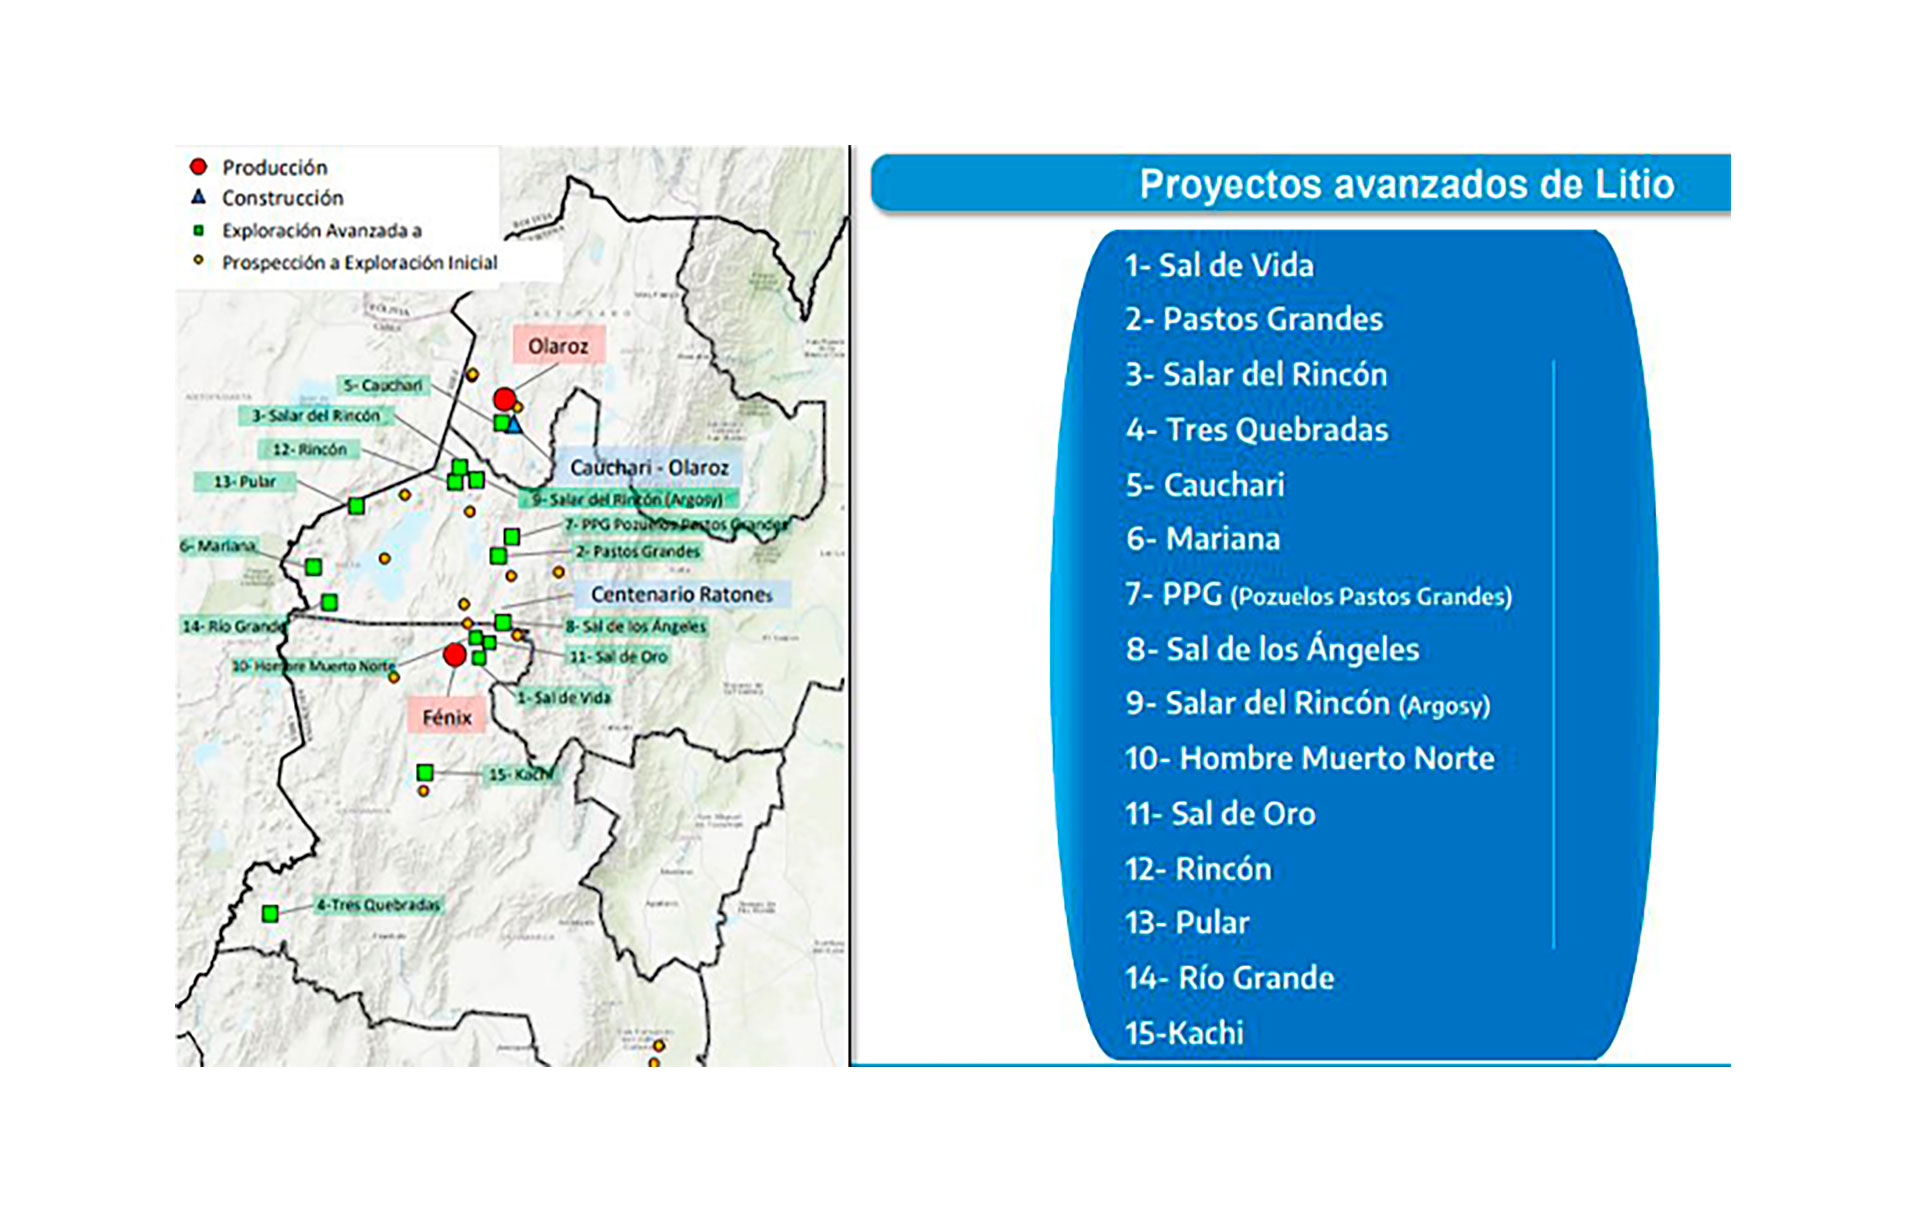 La distribución geográfica de los 15 proyectos de litio más avanzados en la Argentina, según un documento oficial 